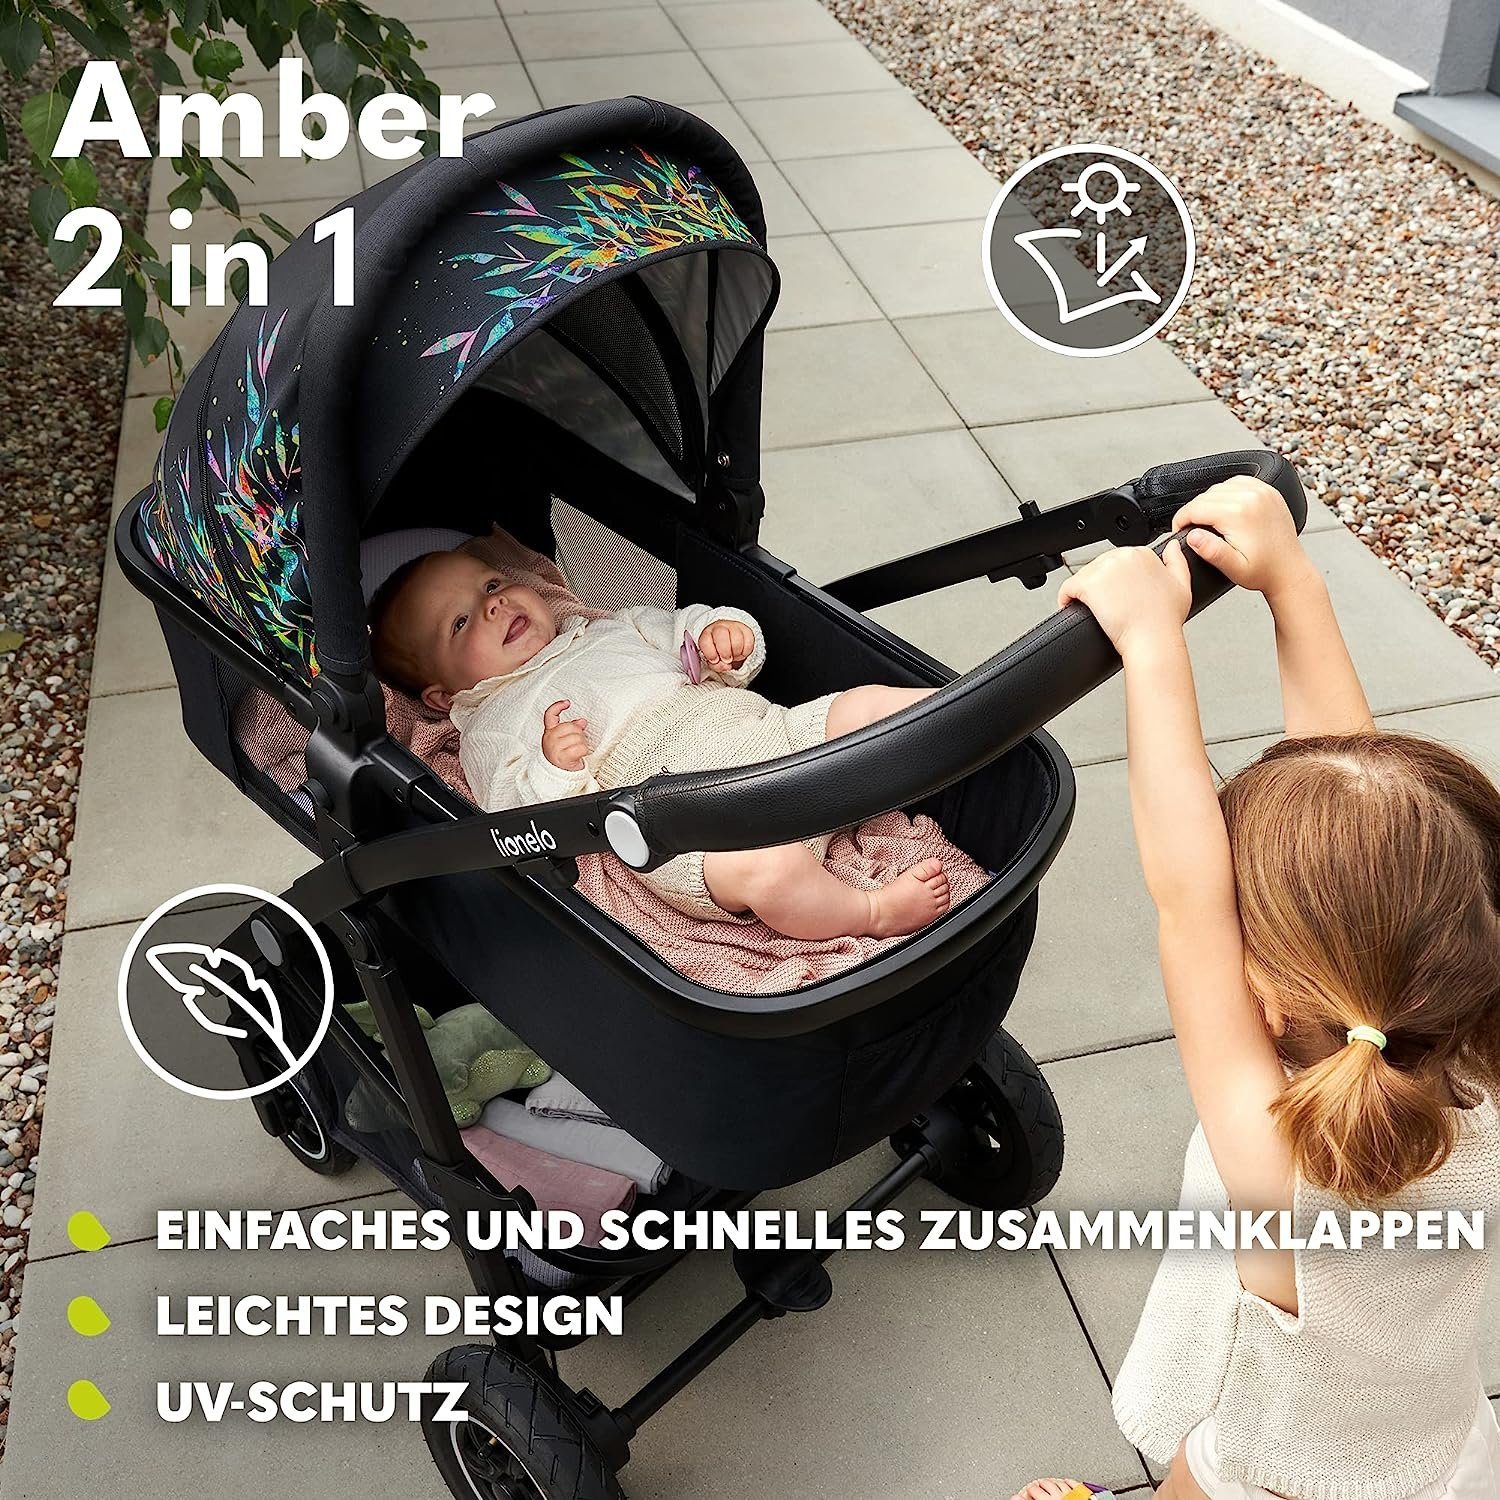 Regenschutz lionelo Grau 2in1 Amber, Schutzüberzug Moskitonetz Kombi-Kinderwagen Tasche